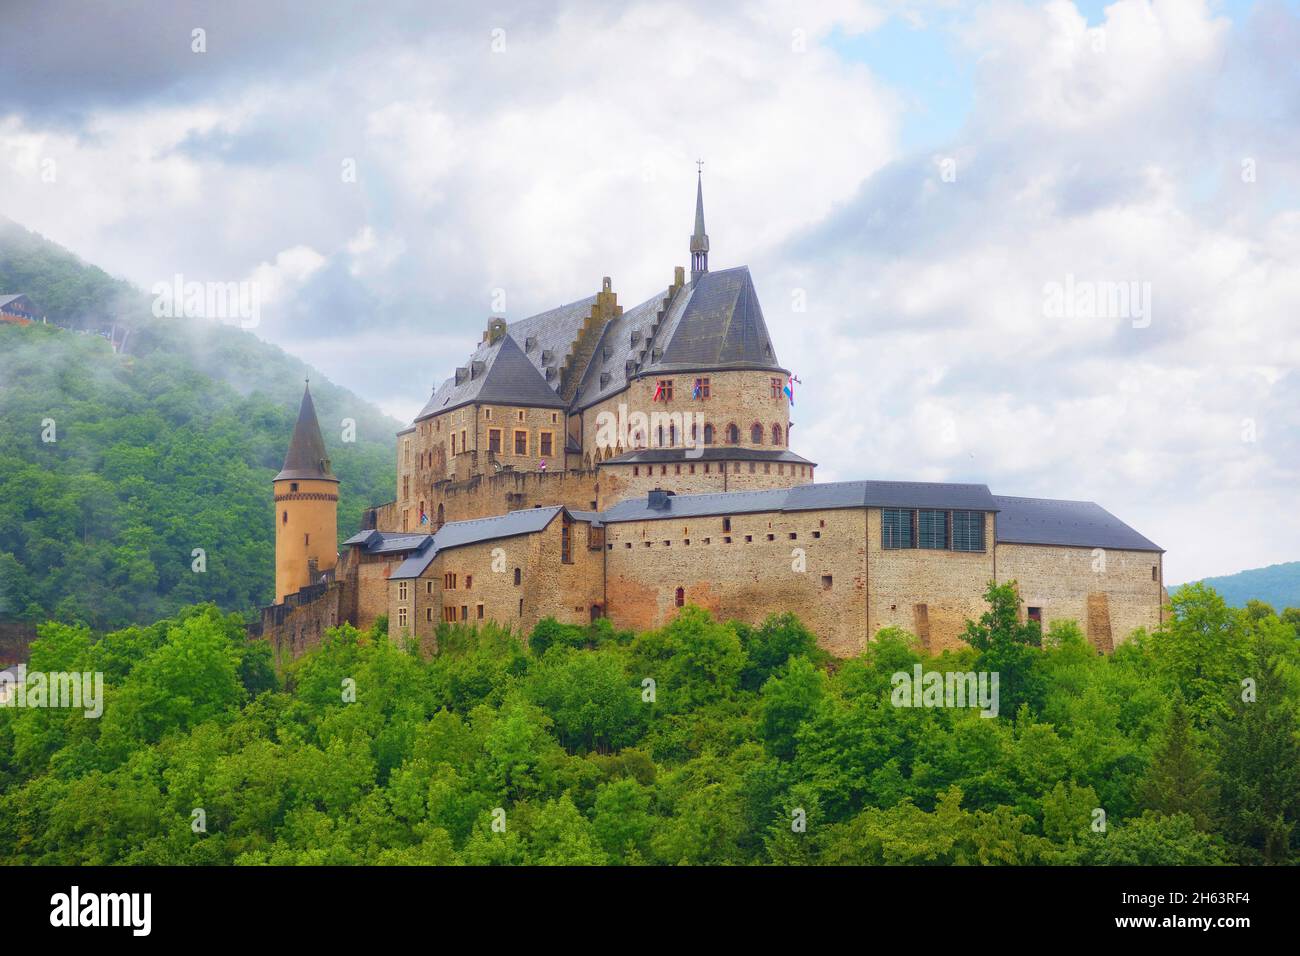 château de vianden,luxembourg,europe Banque D'Images